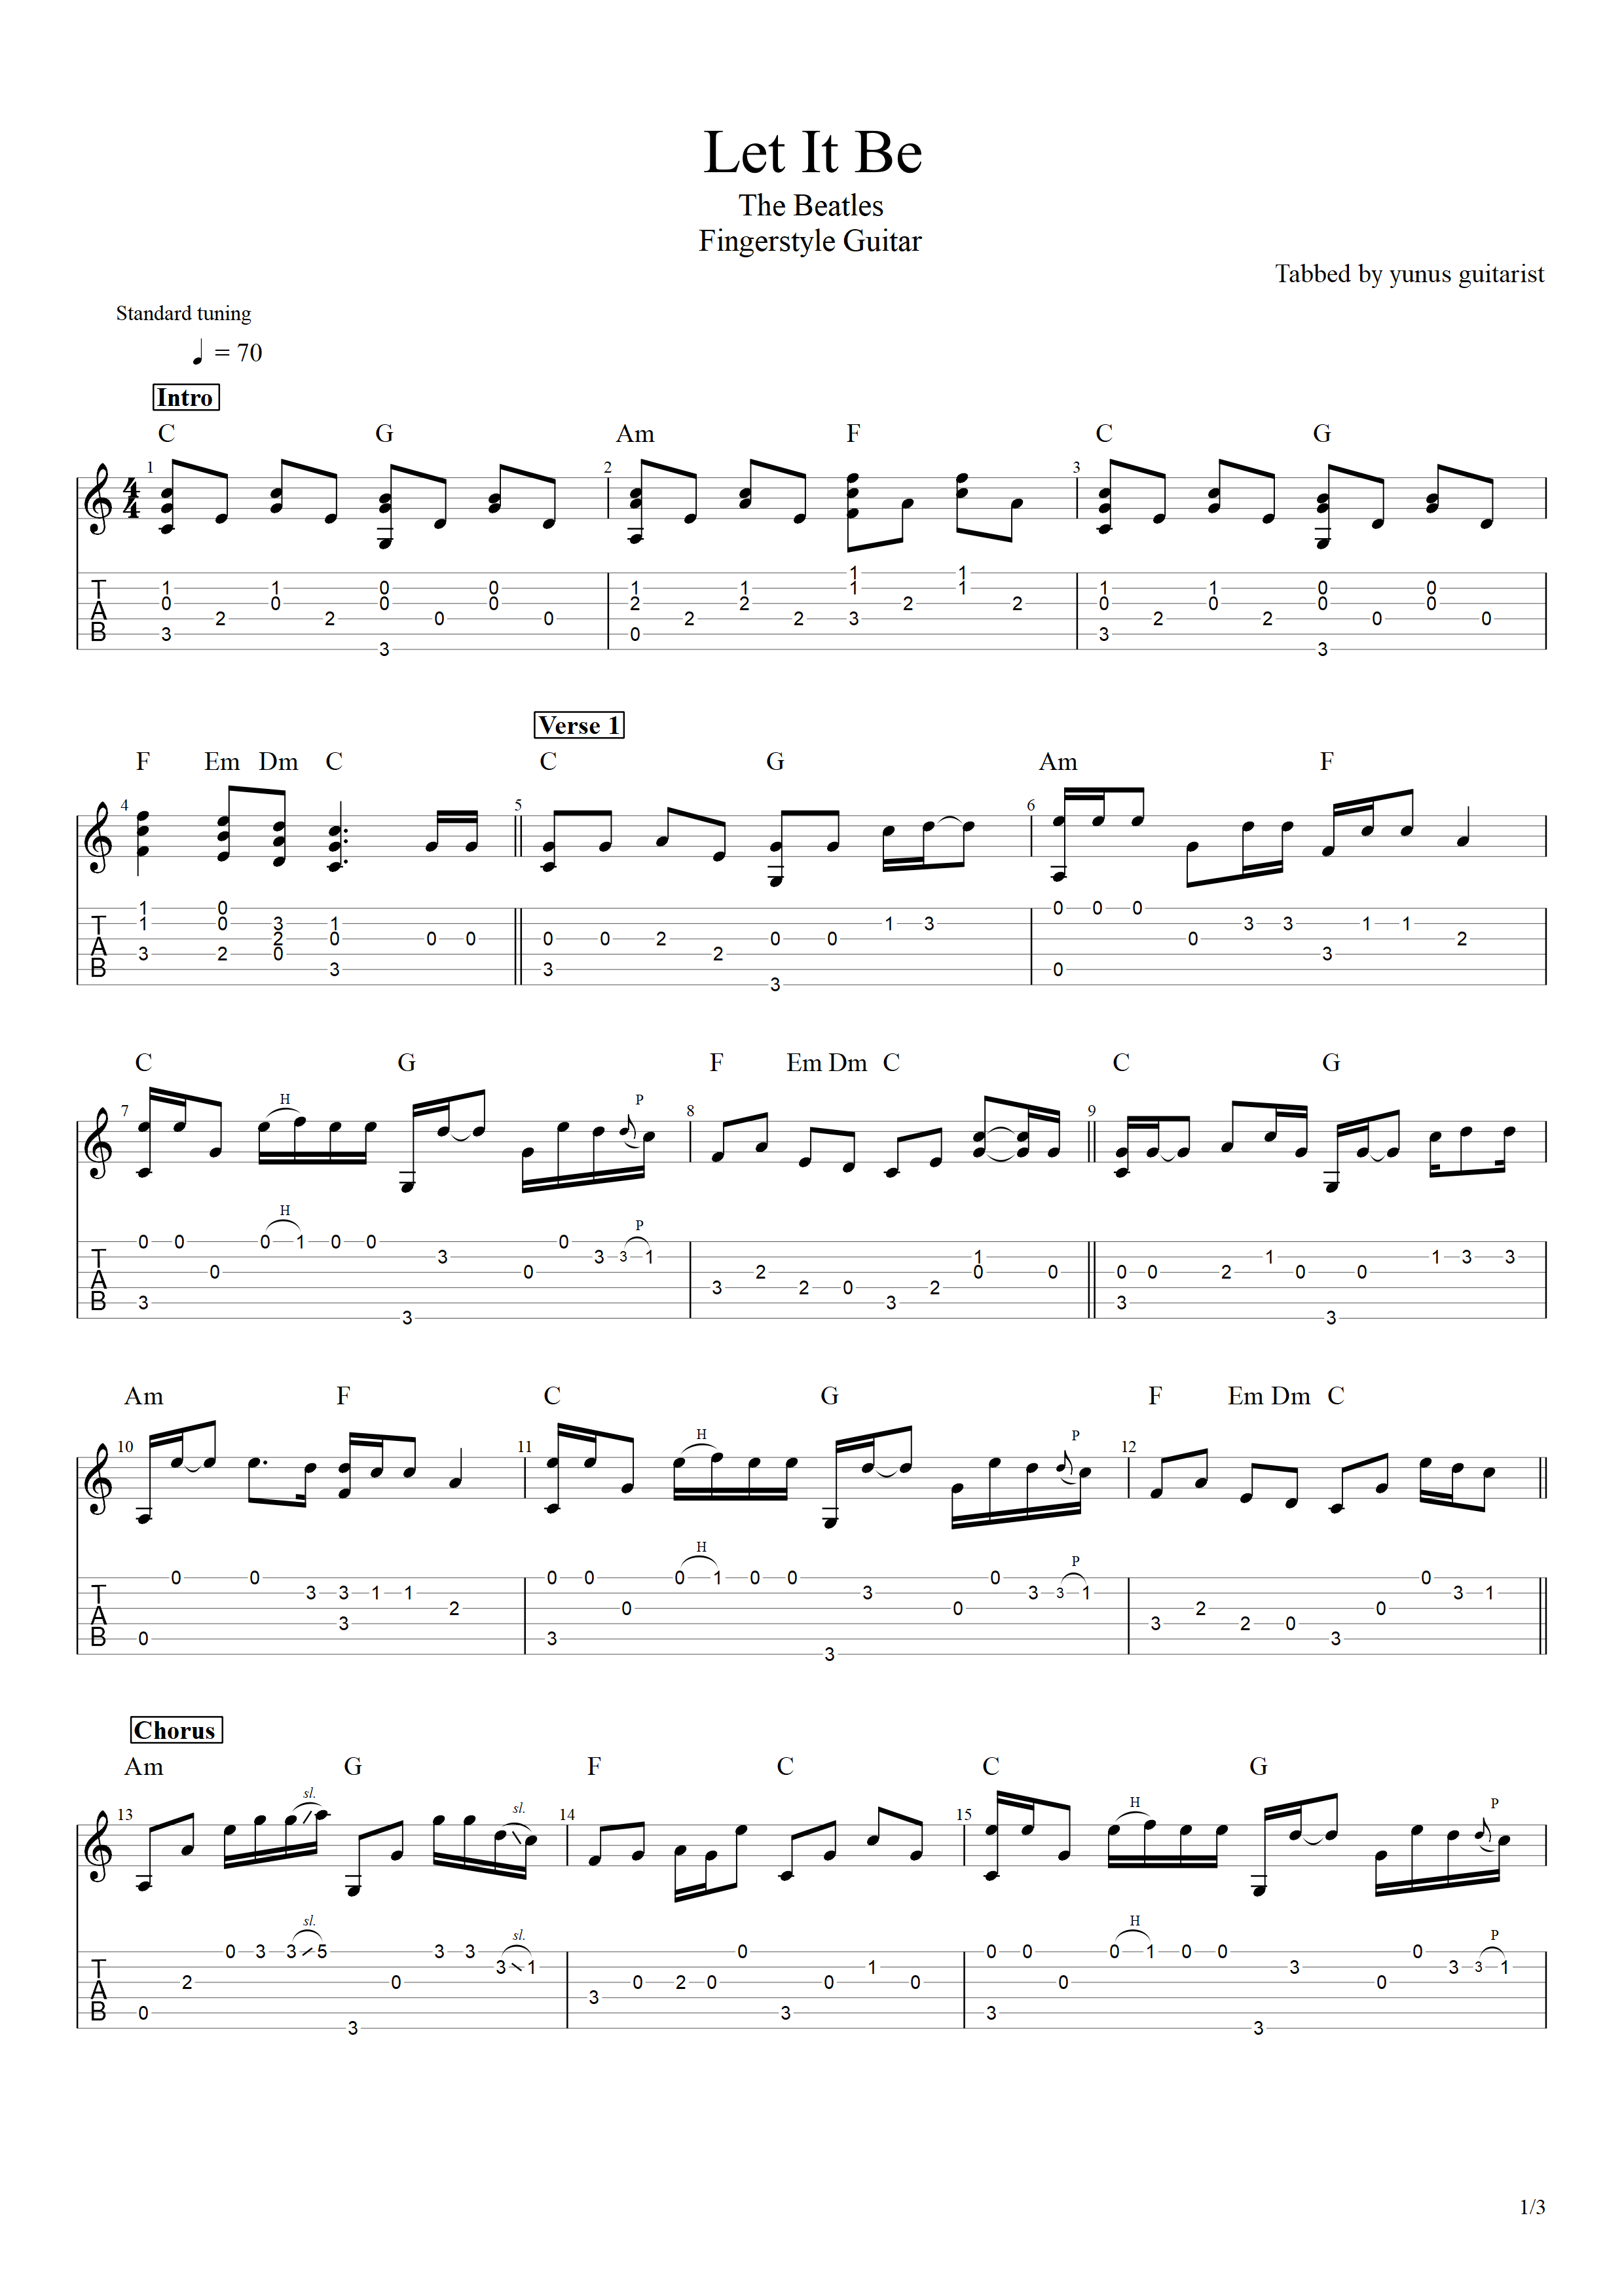 Let It Be - The Beatles (PDF) - Yunus Guitarist